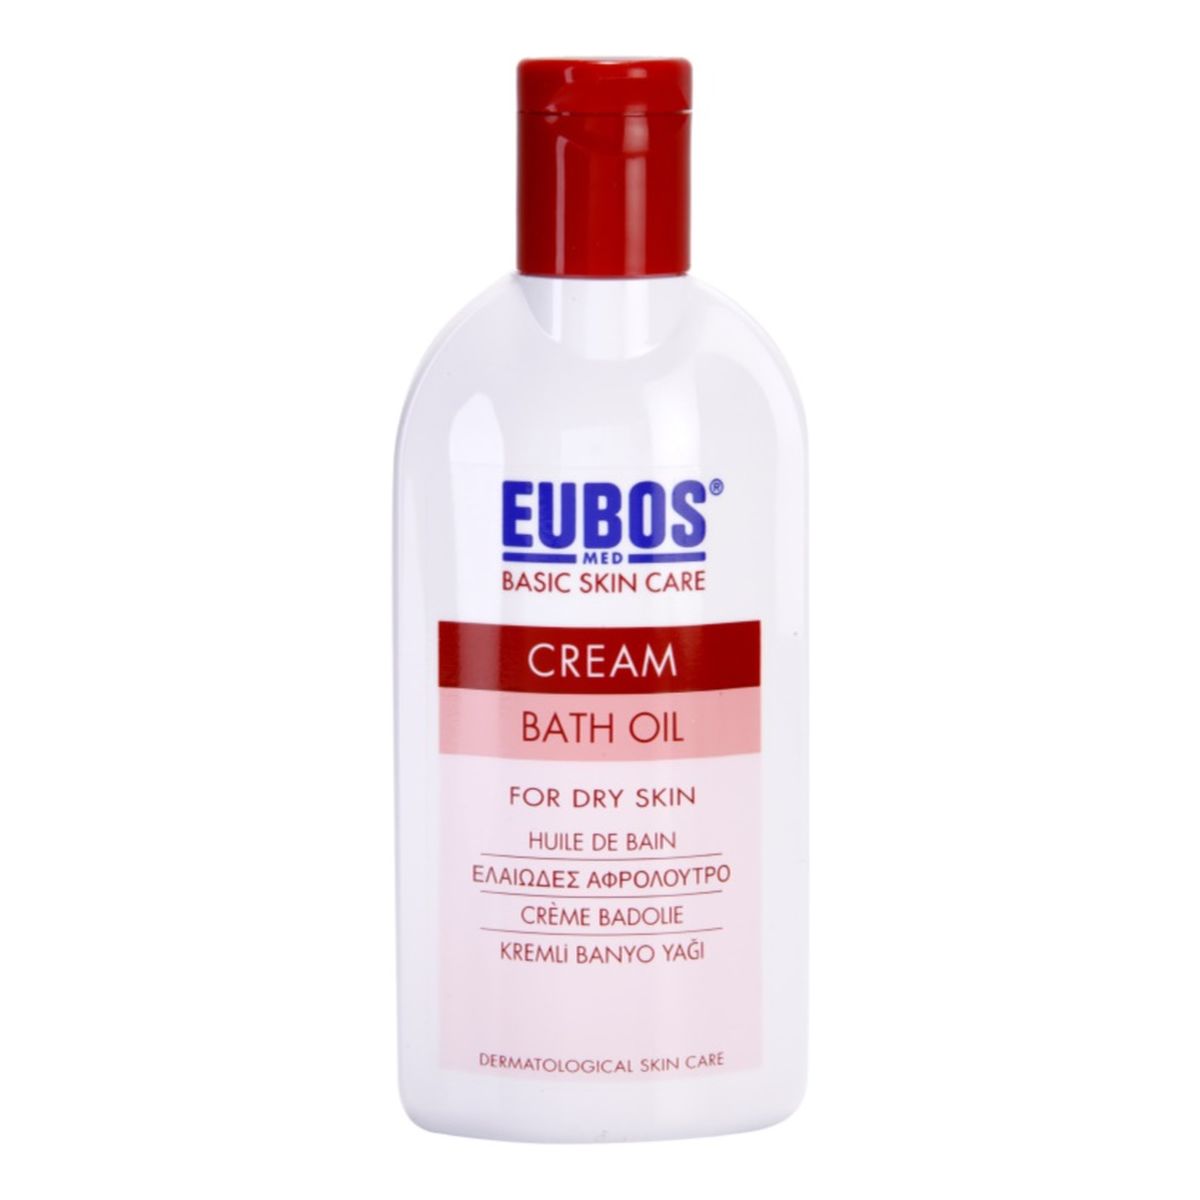 Eubos-Med Cream olejek do kąpieli do skóry suchej i wrażliwej 200ml